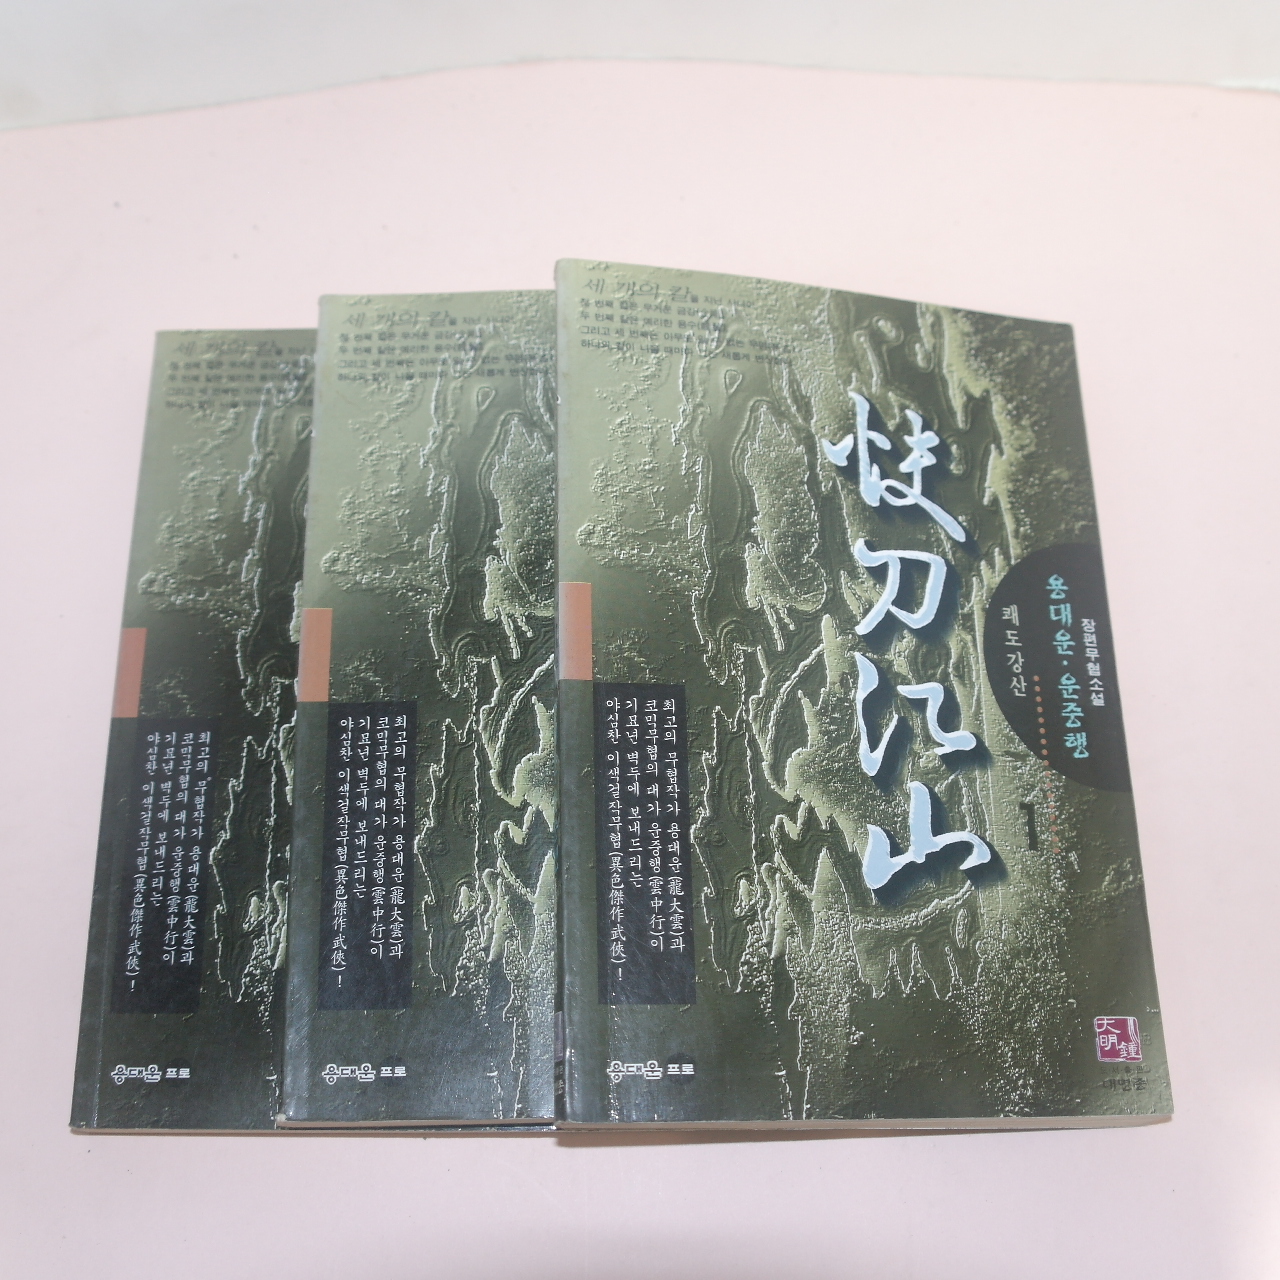 1999년초판 용대운,운중행 무협소설 쾌도강산(快刀江山) 3책완질